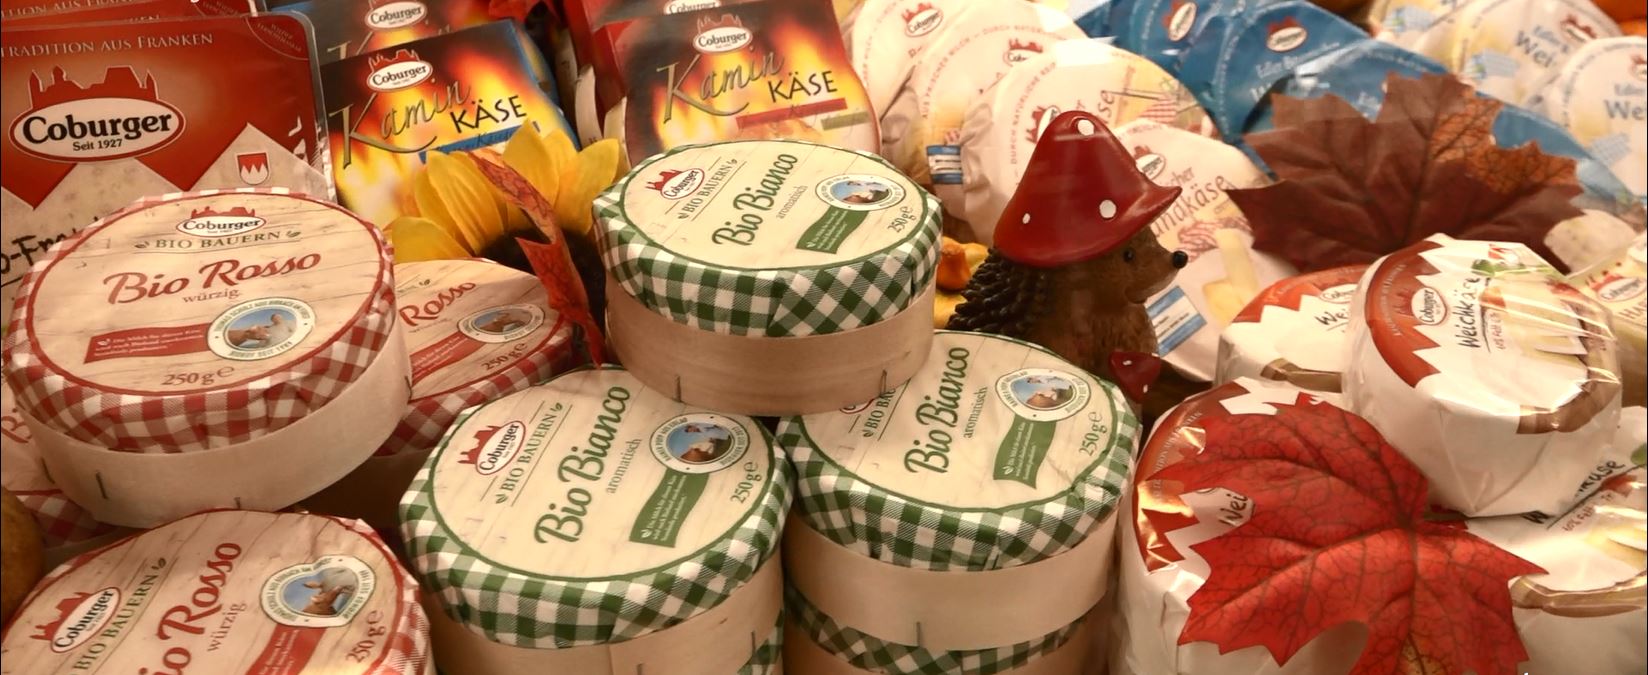 Käse für die Welt – Die Milchwerke Oberfranken bei der Oberfranken Ausstellung 2018 in Coburg